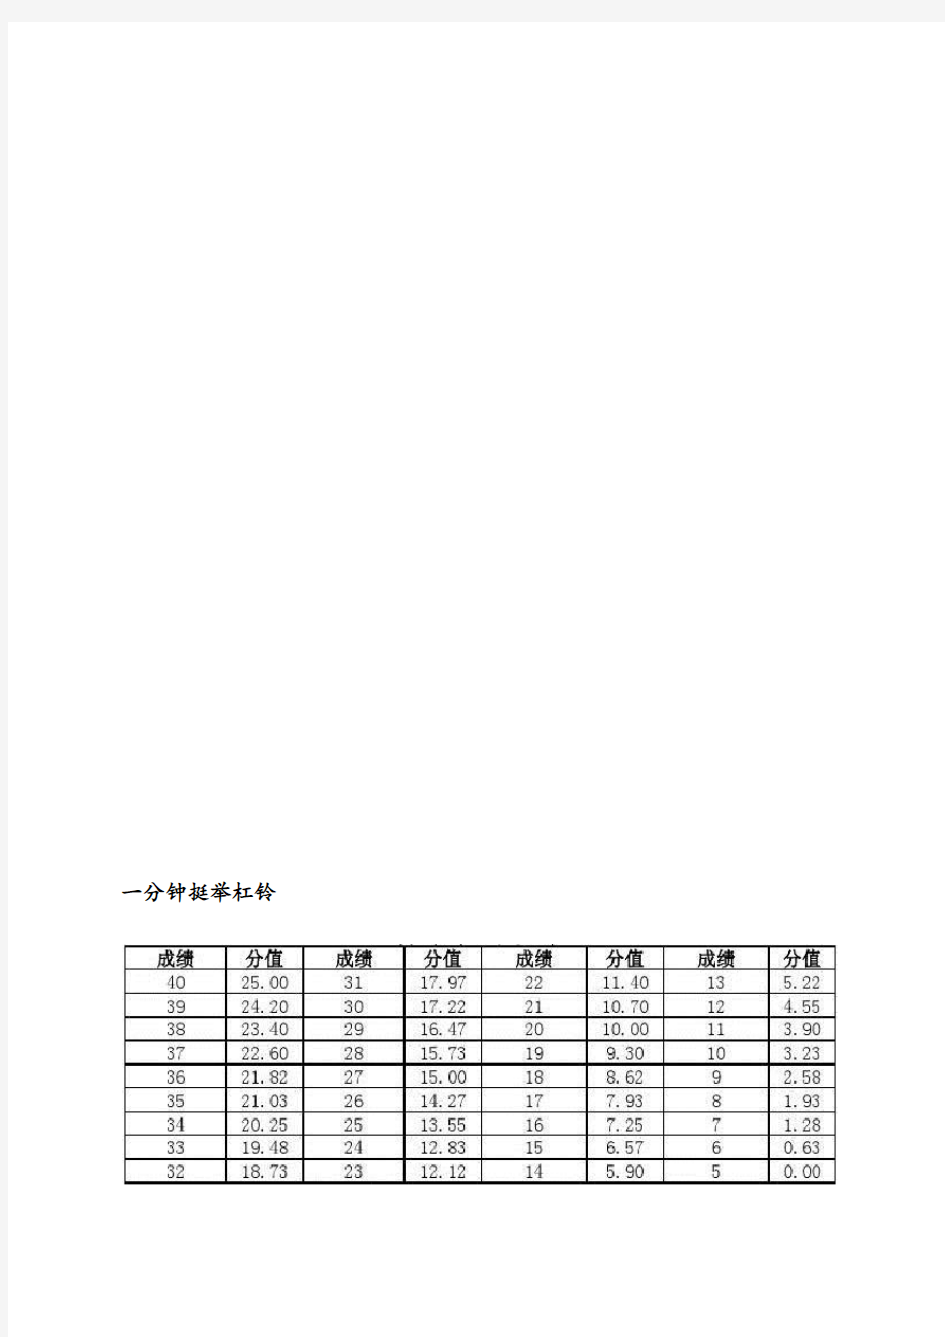 山西省高考体育测试成绩分值对照表